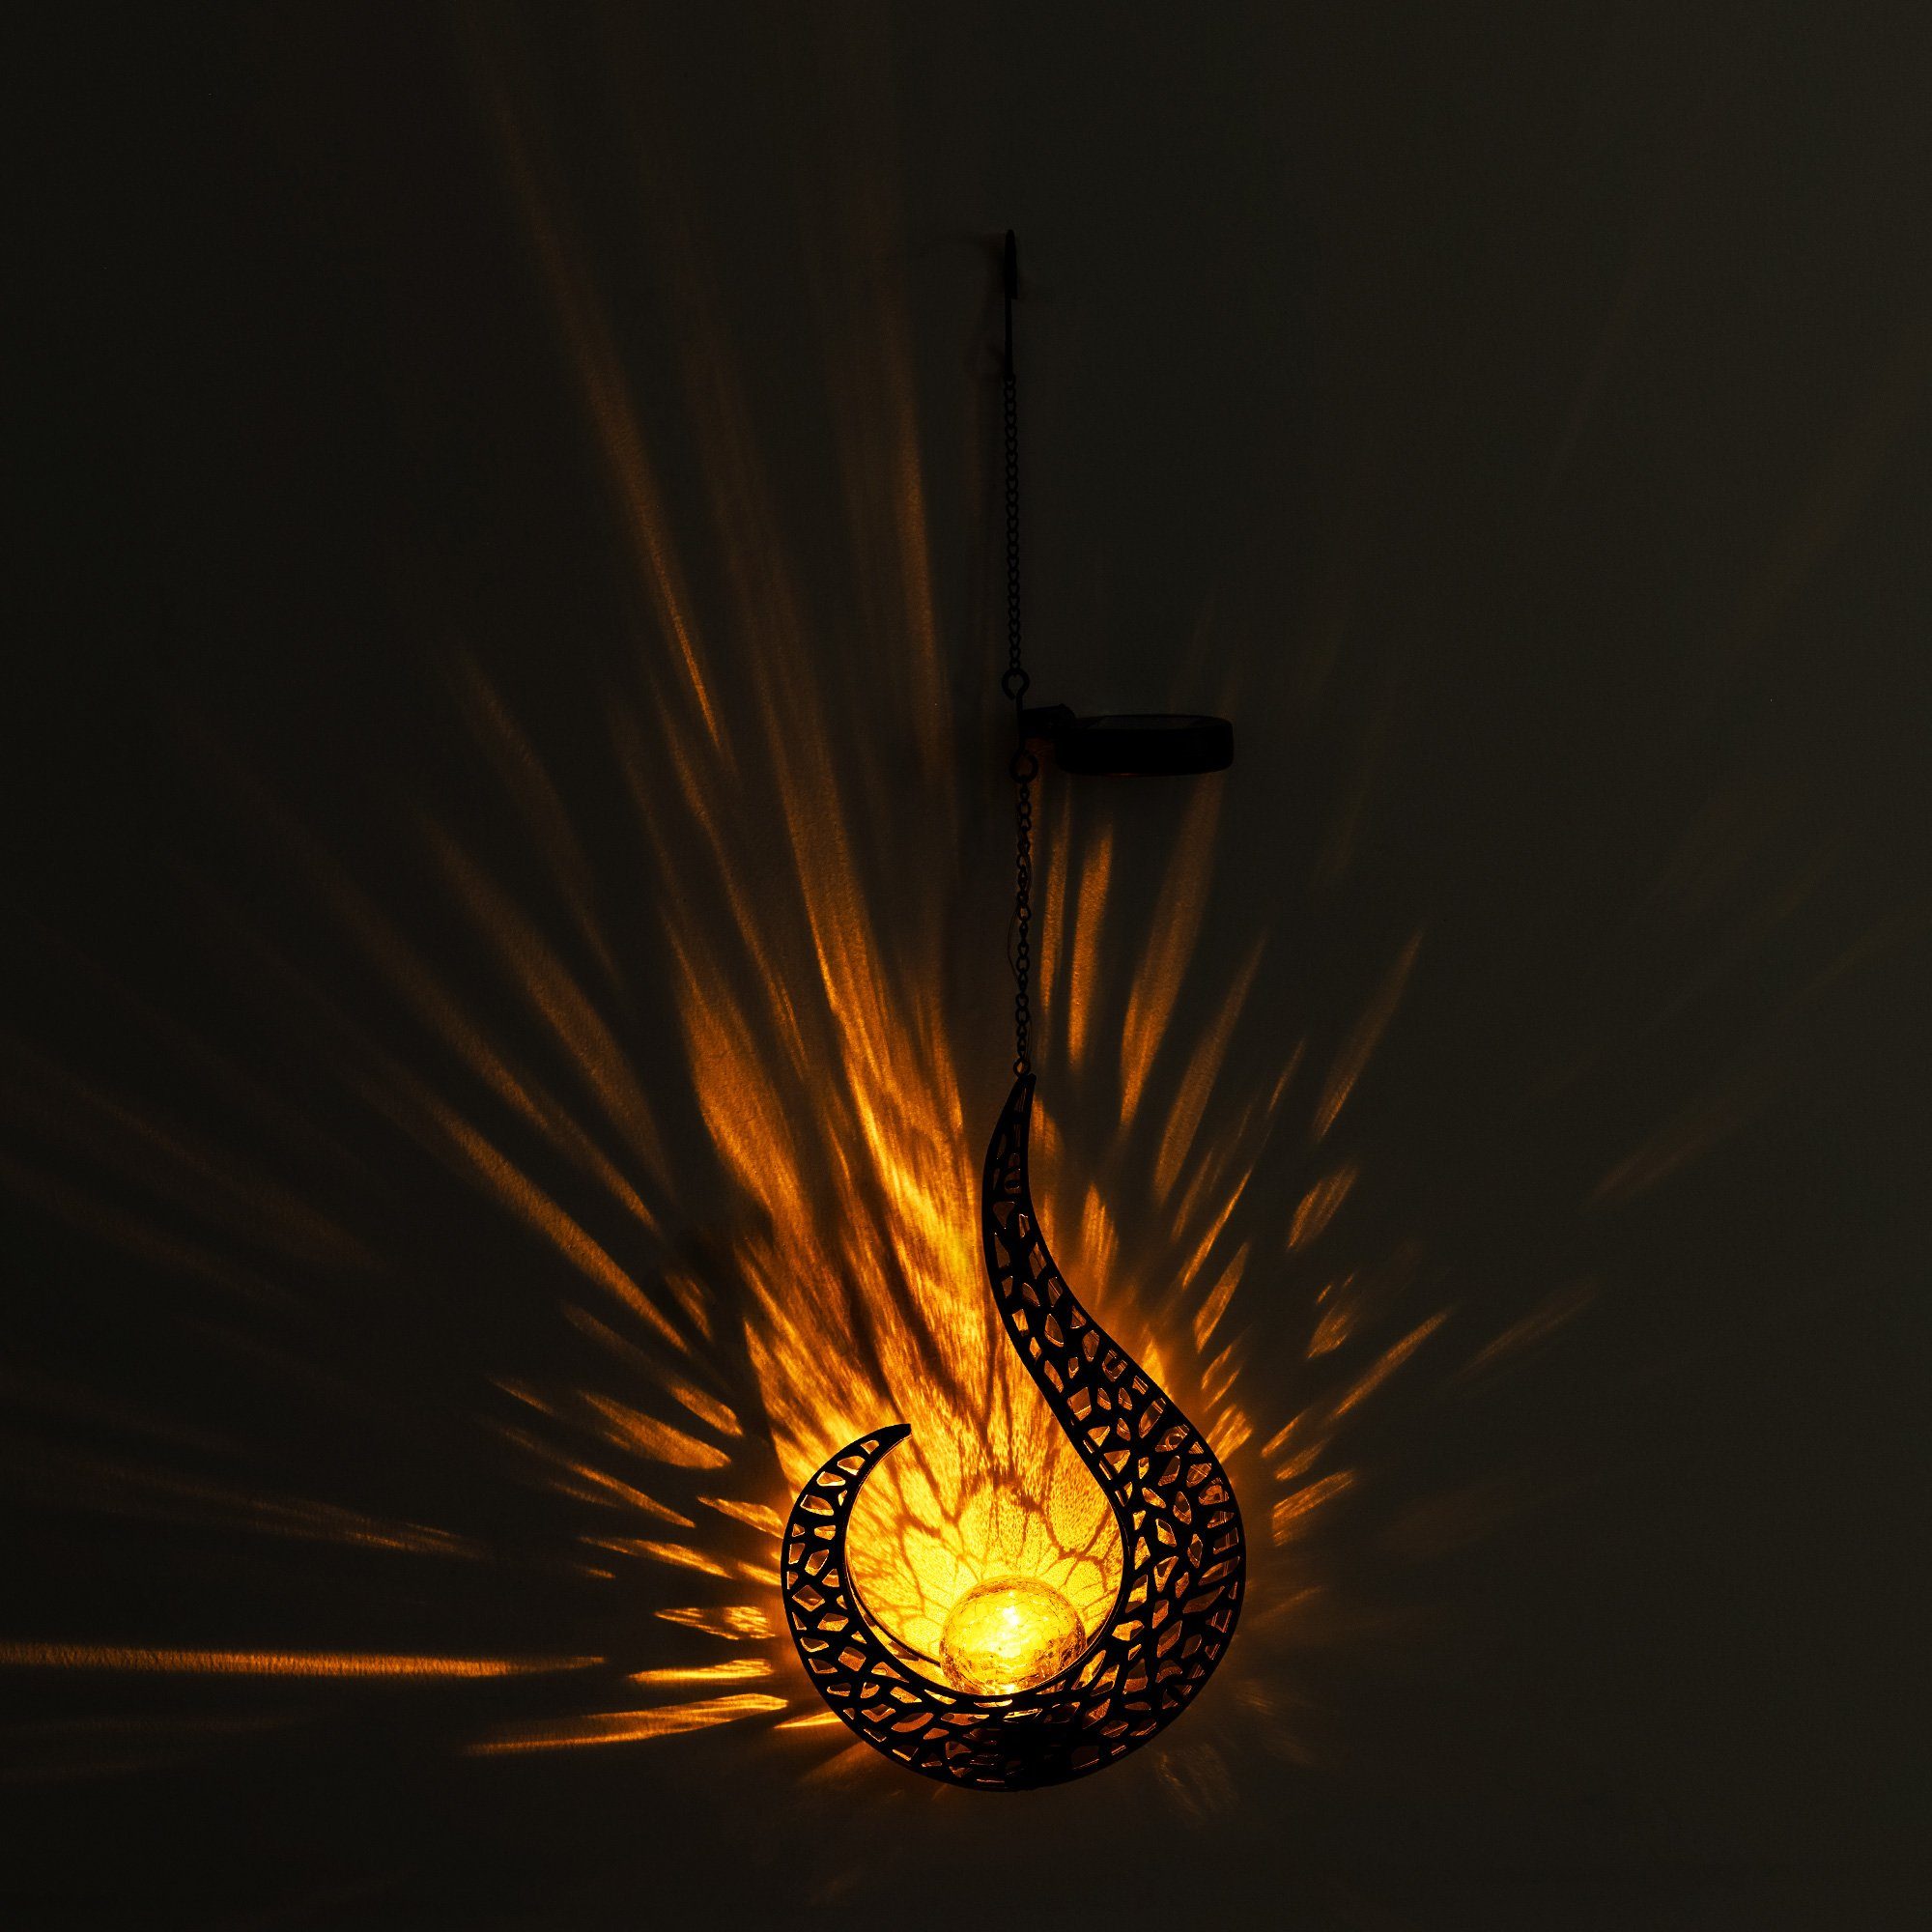 Hängelampe LED - Gartenfackel Solar 1x orientalisch - Navaris Solarlampe Flammen-Design LED